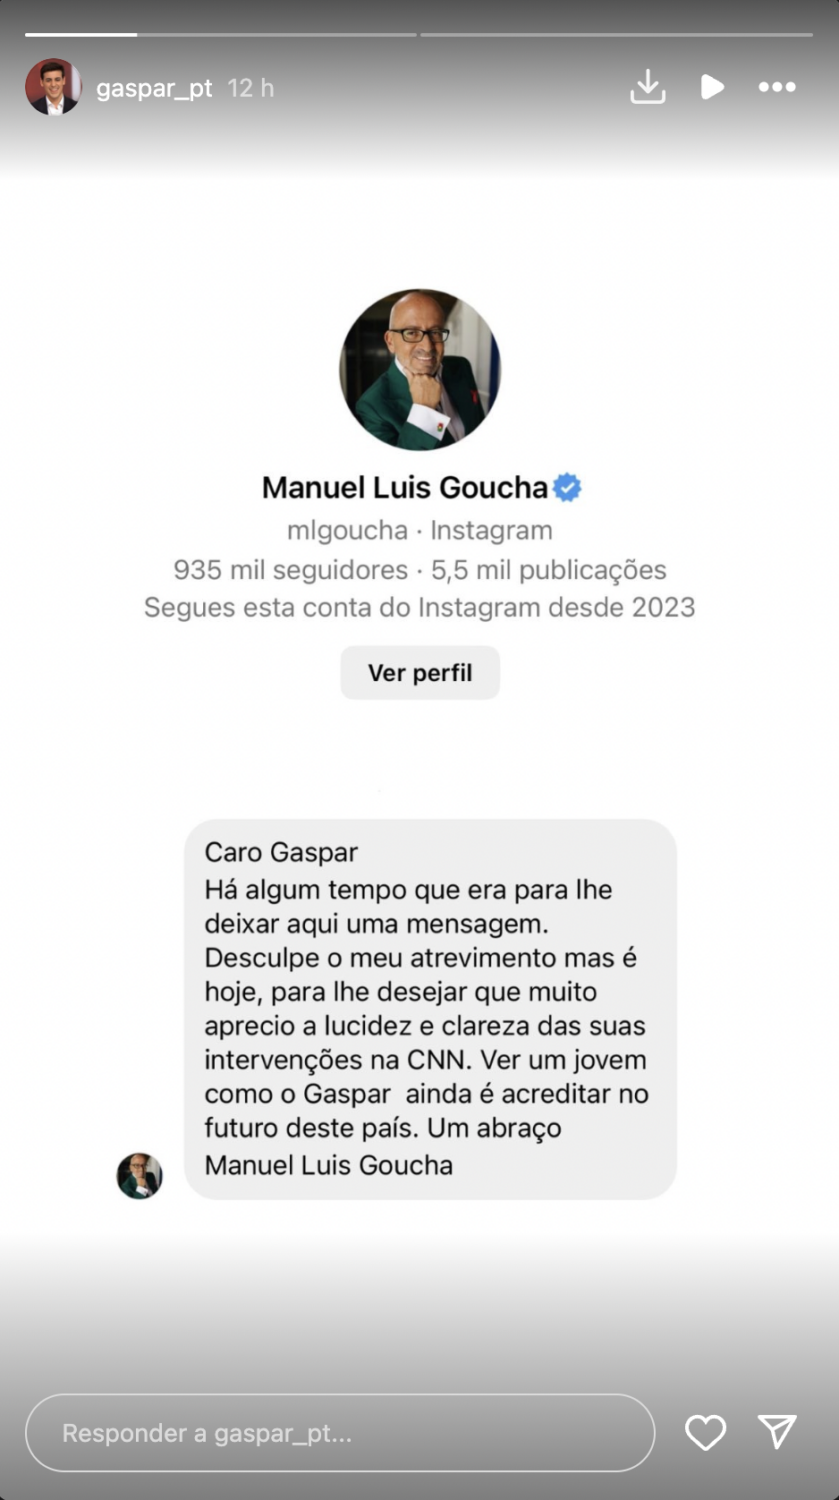 Comentador da CNN Portugal revela mensagem privada de Manuel Luís Goucha e reage: &#8220;Alguém que admiro&#8230;&#8221;